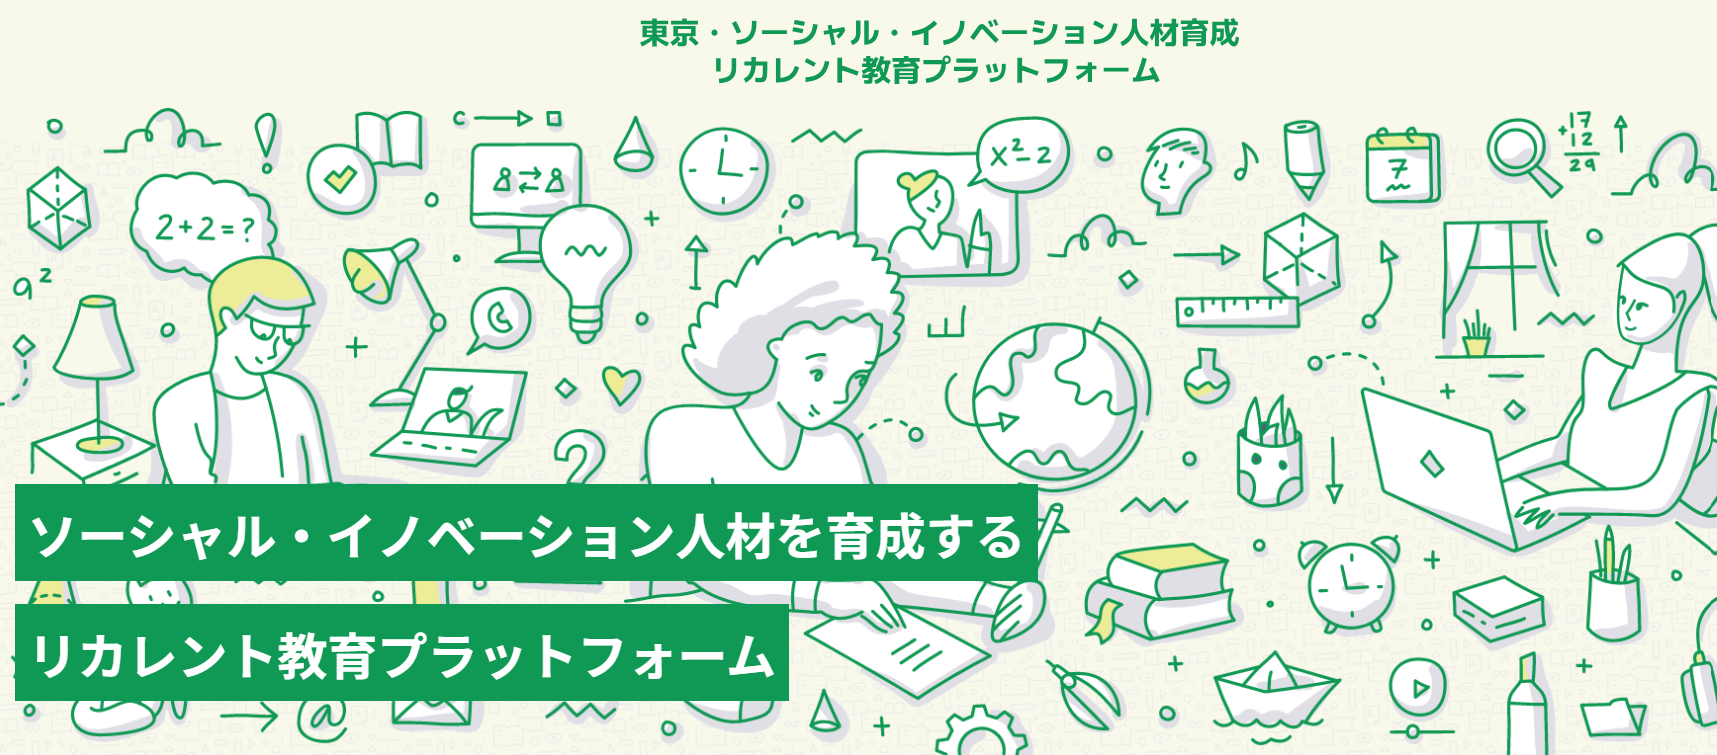 活動内容「東京・ソーシャル・イノベーション人材育成リカレント教育プラットフォーム」を更新しました。